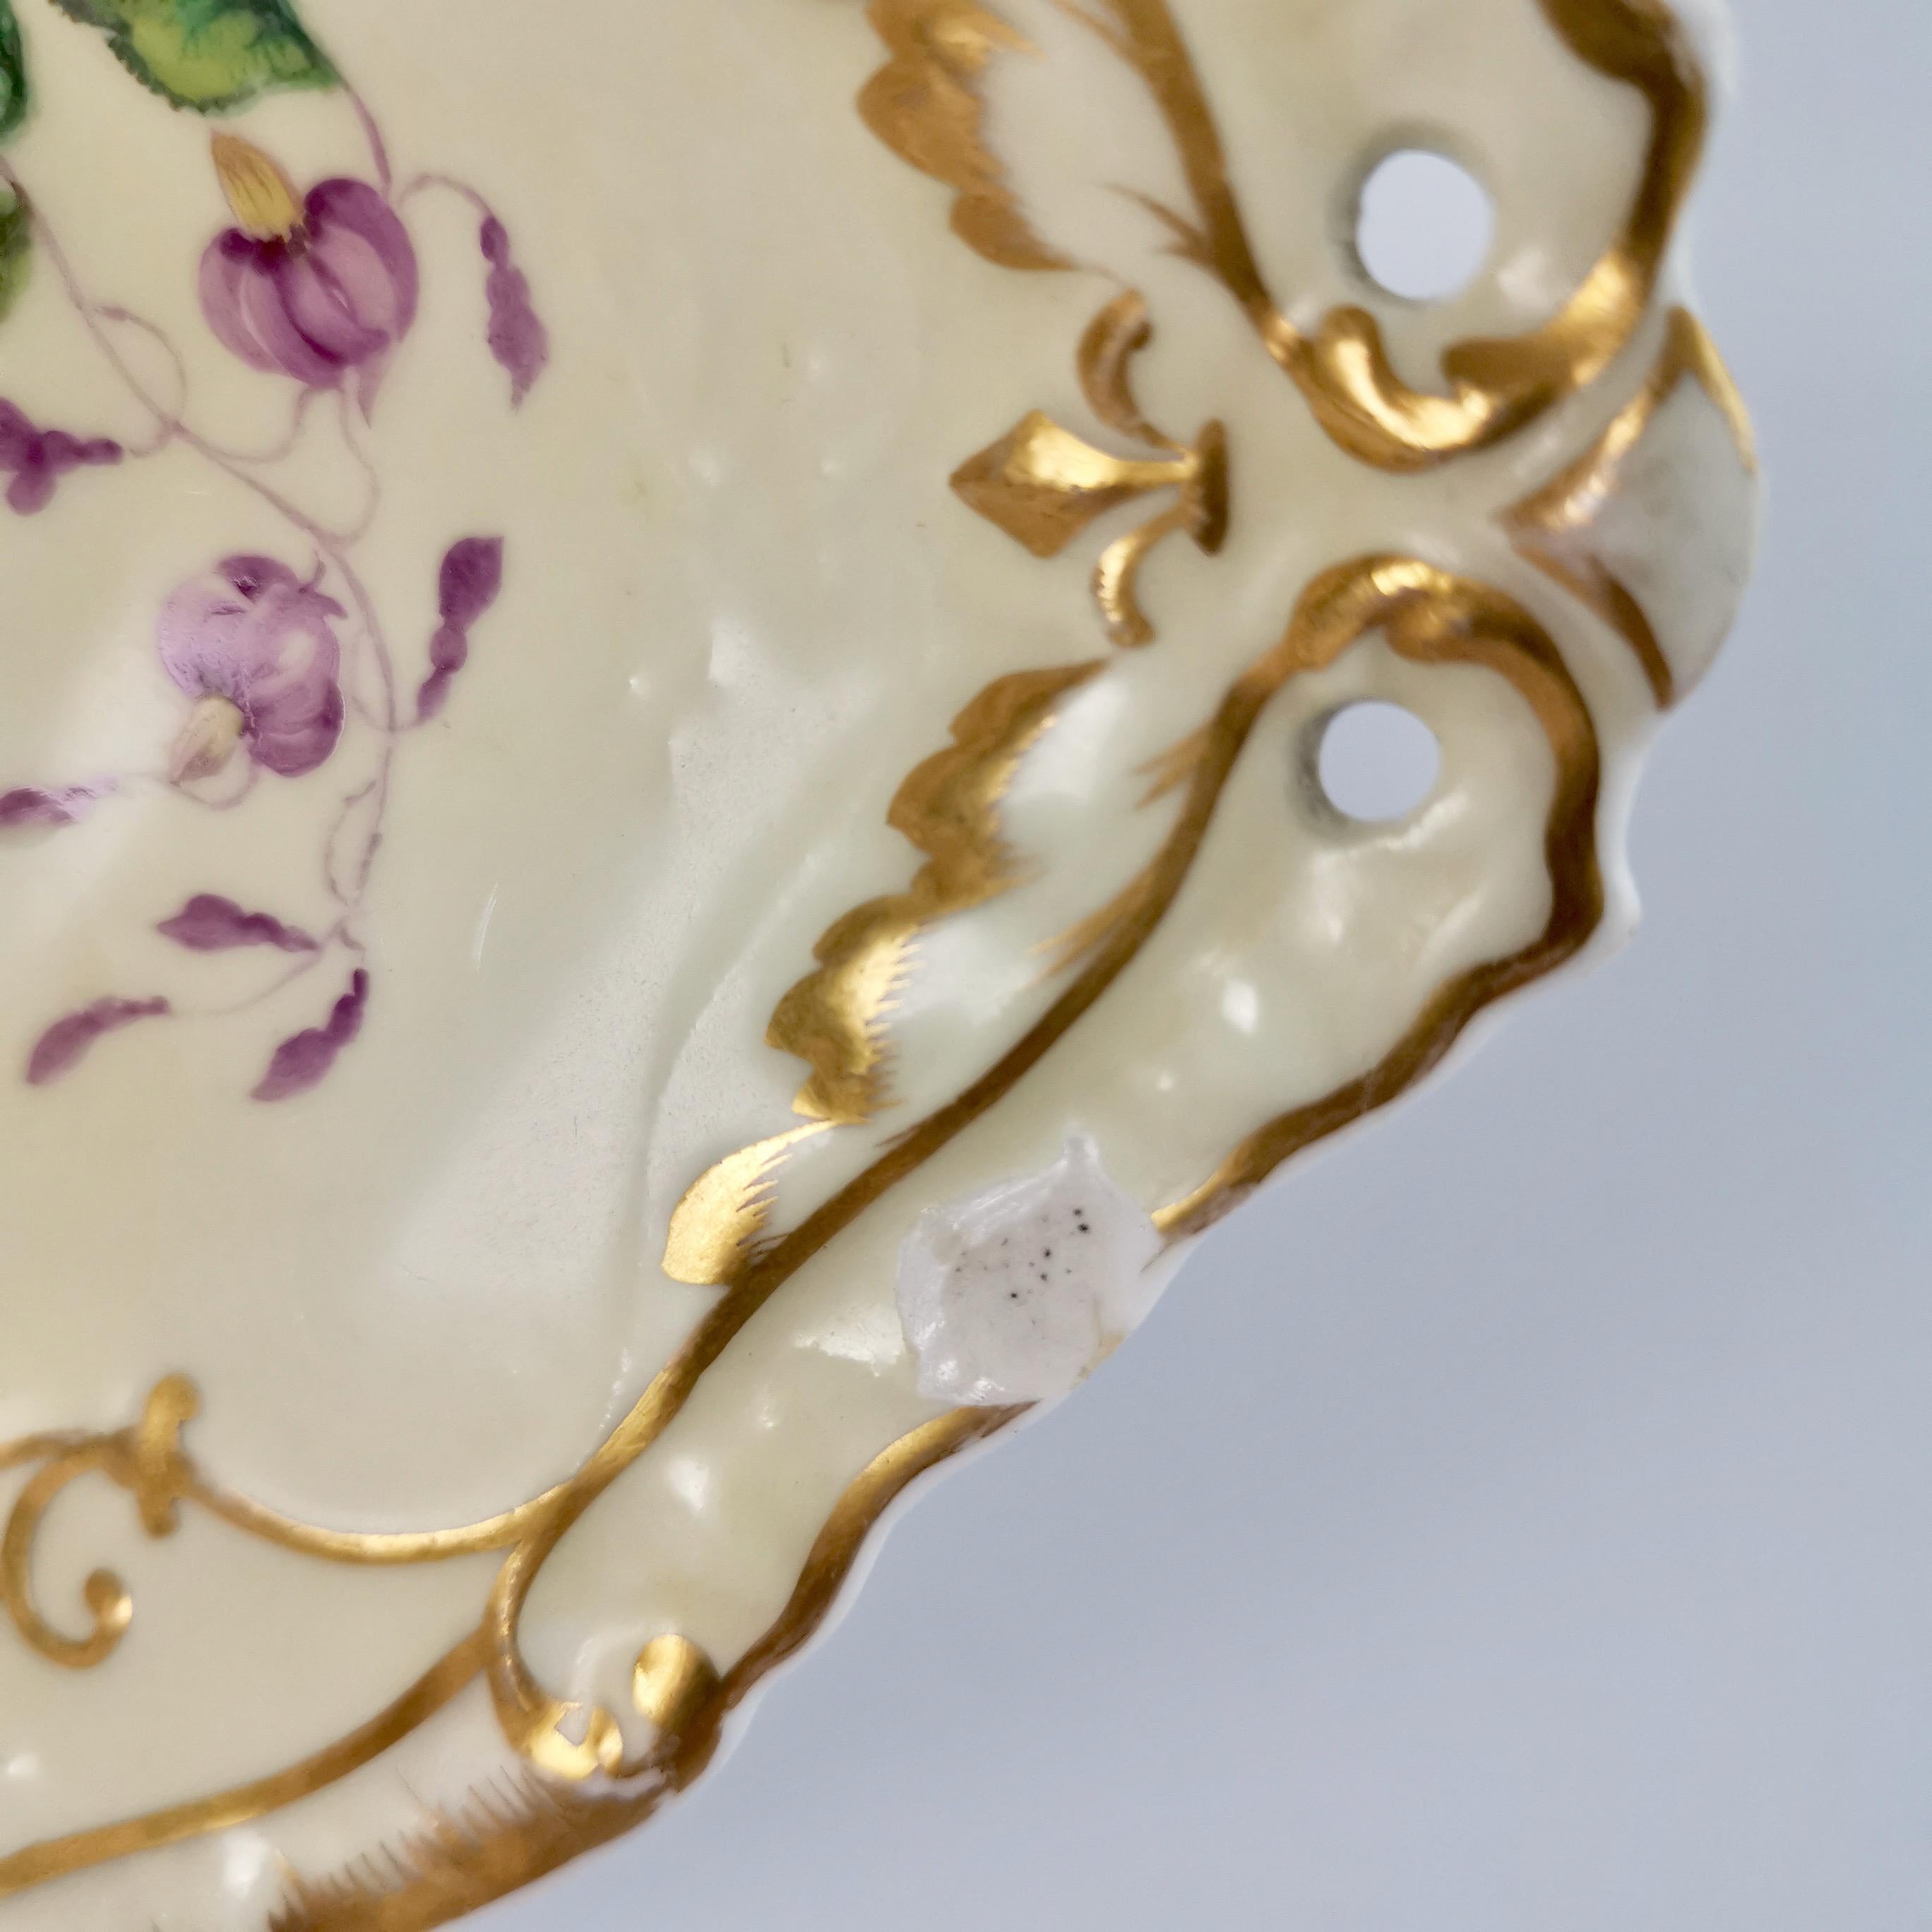 Copeland & Garrett Porcelain Dessert Set, Yellow with Butterflies, 1833-1847 11